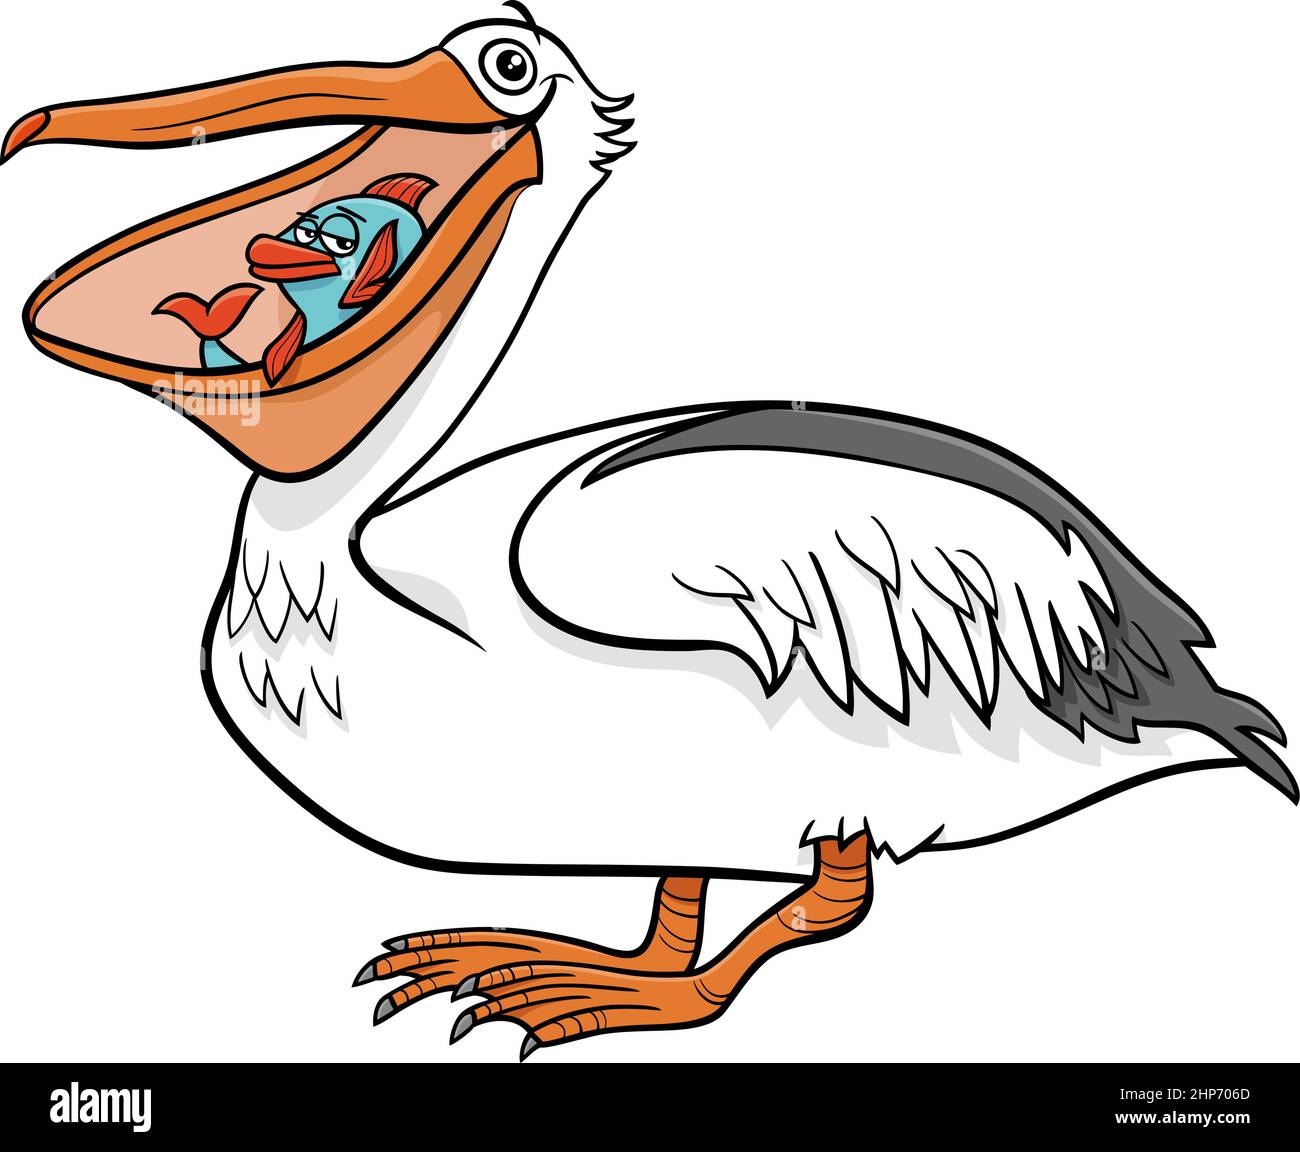 personnage animal d'oiseau pelican avec dessin animé de poisson Illustration de Vecteur